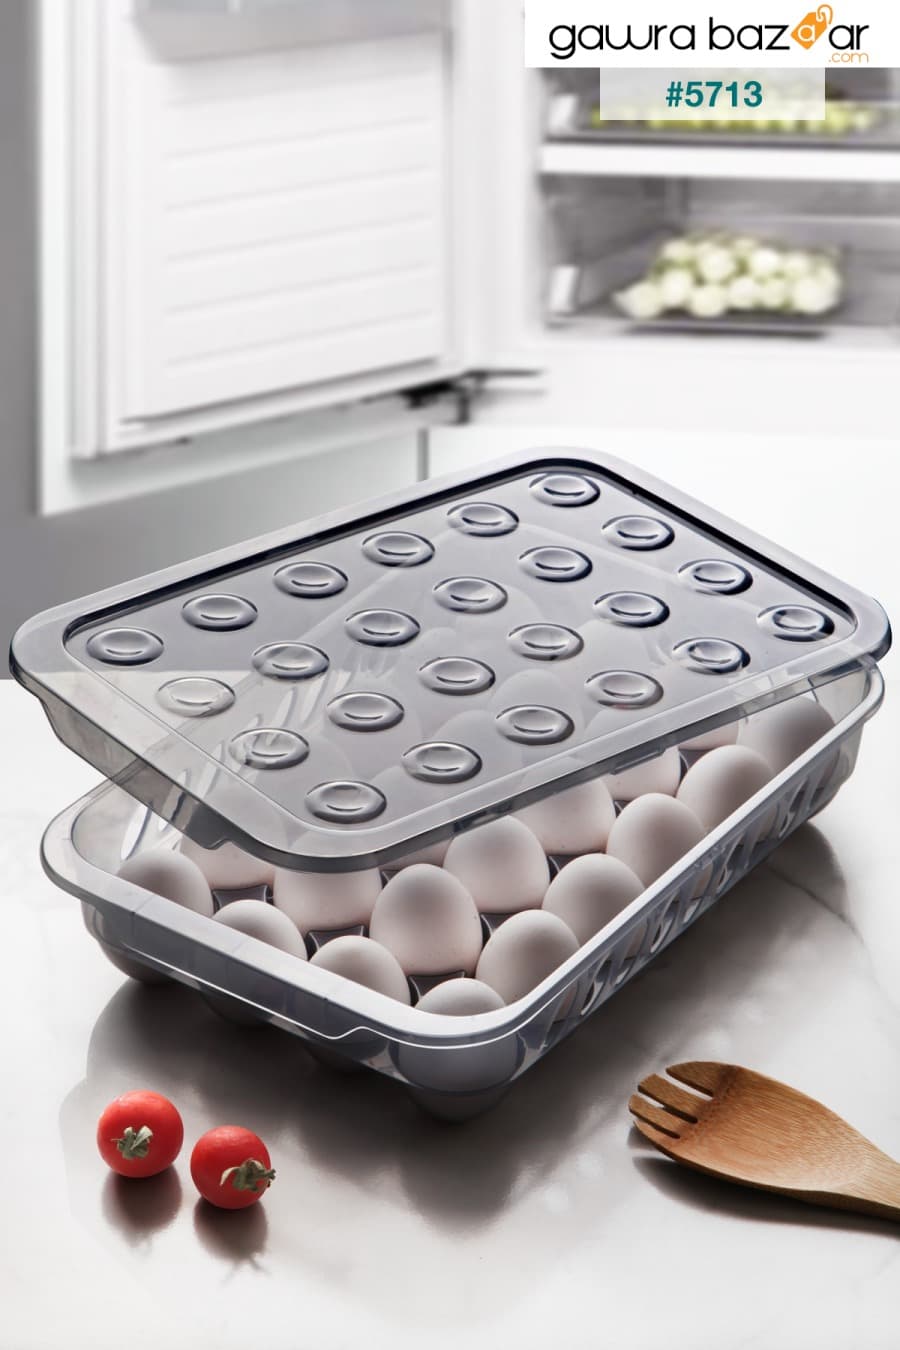 24 قطعة كوب بيض ثلاجة بغطاء مغلق - حاوية تخزين البيض Kitchen Life 0